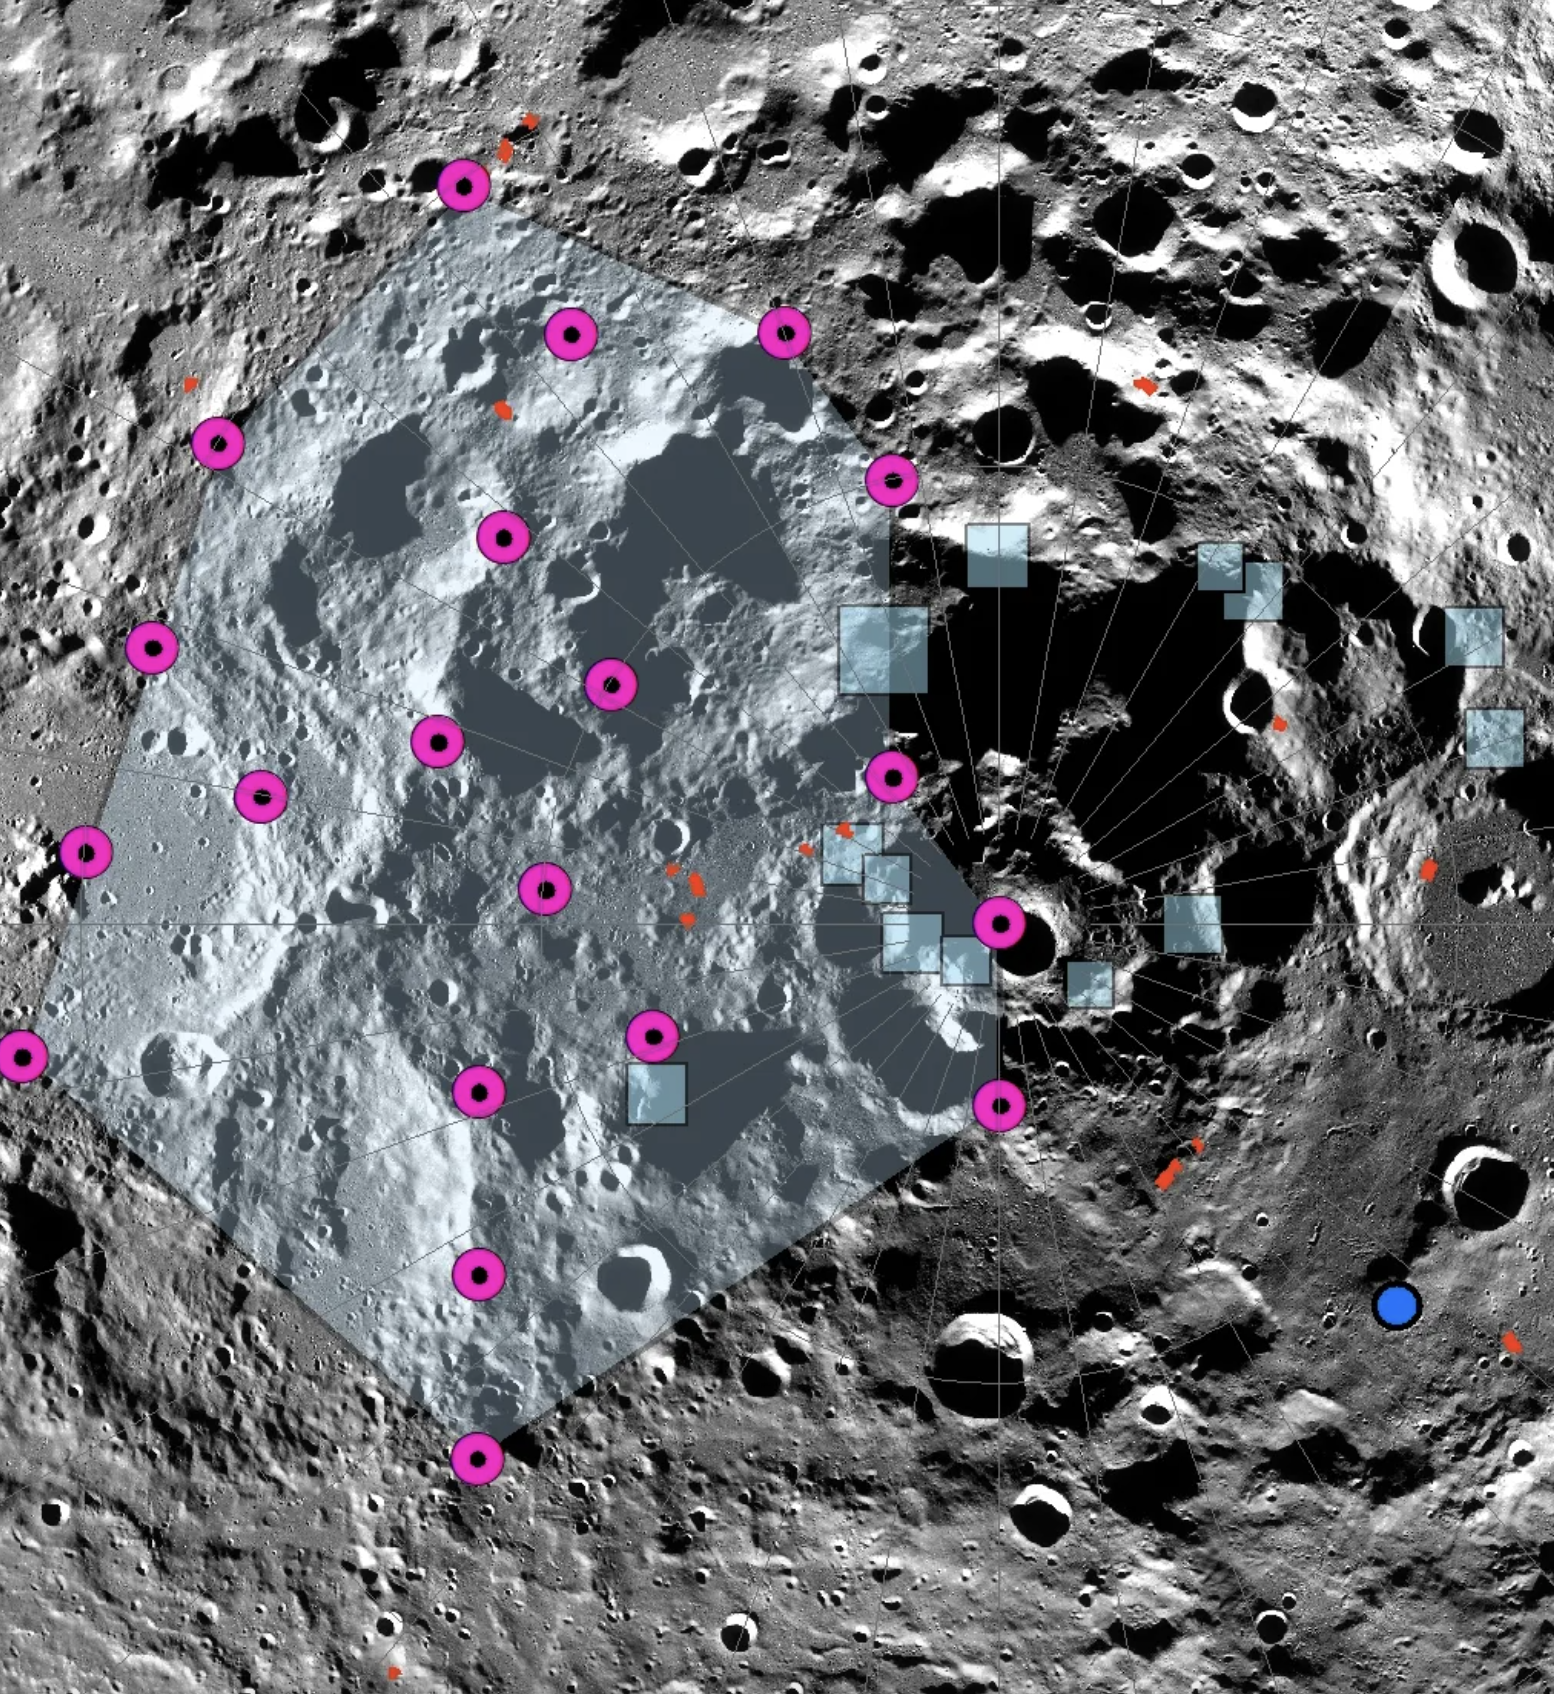 Imagen que muestra parte de la superficie lunar con marcas fucsia que señalan el epicentro de un sismo lunar.